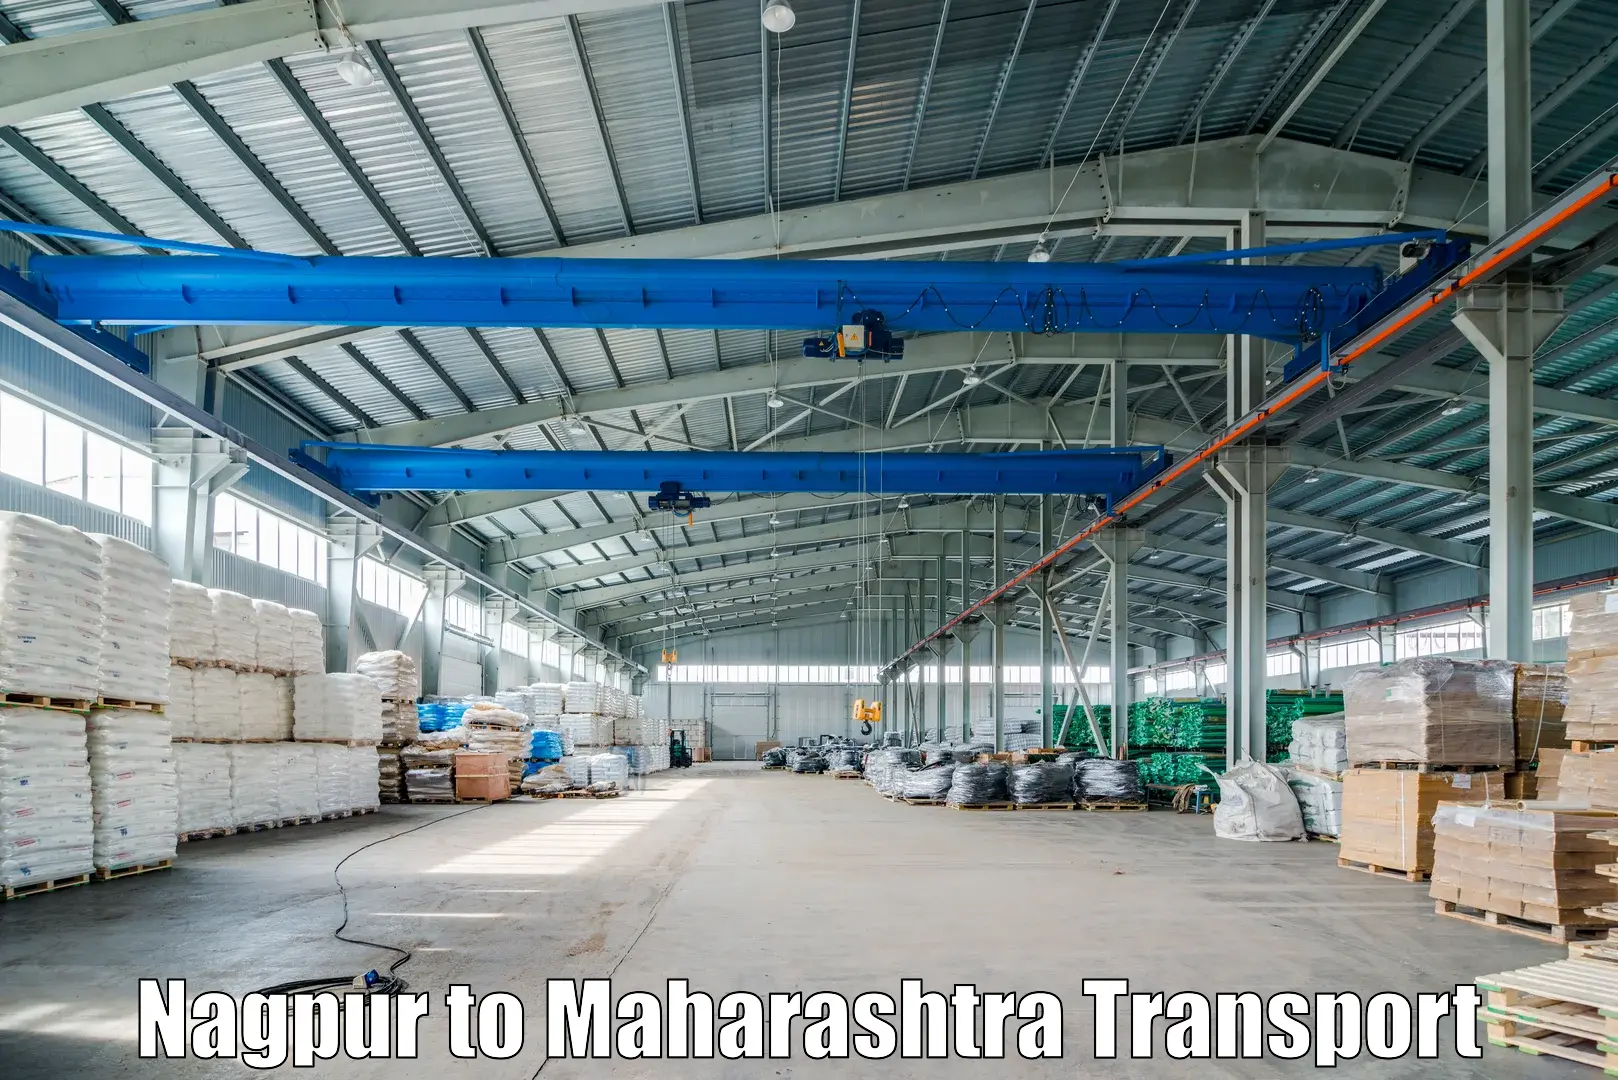 Nearby transport service Nagpur to Raigarh Maharashtra